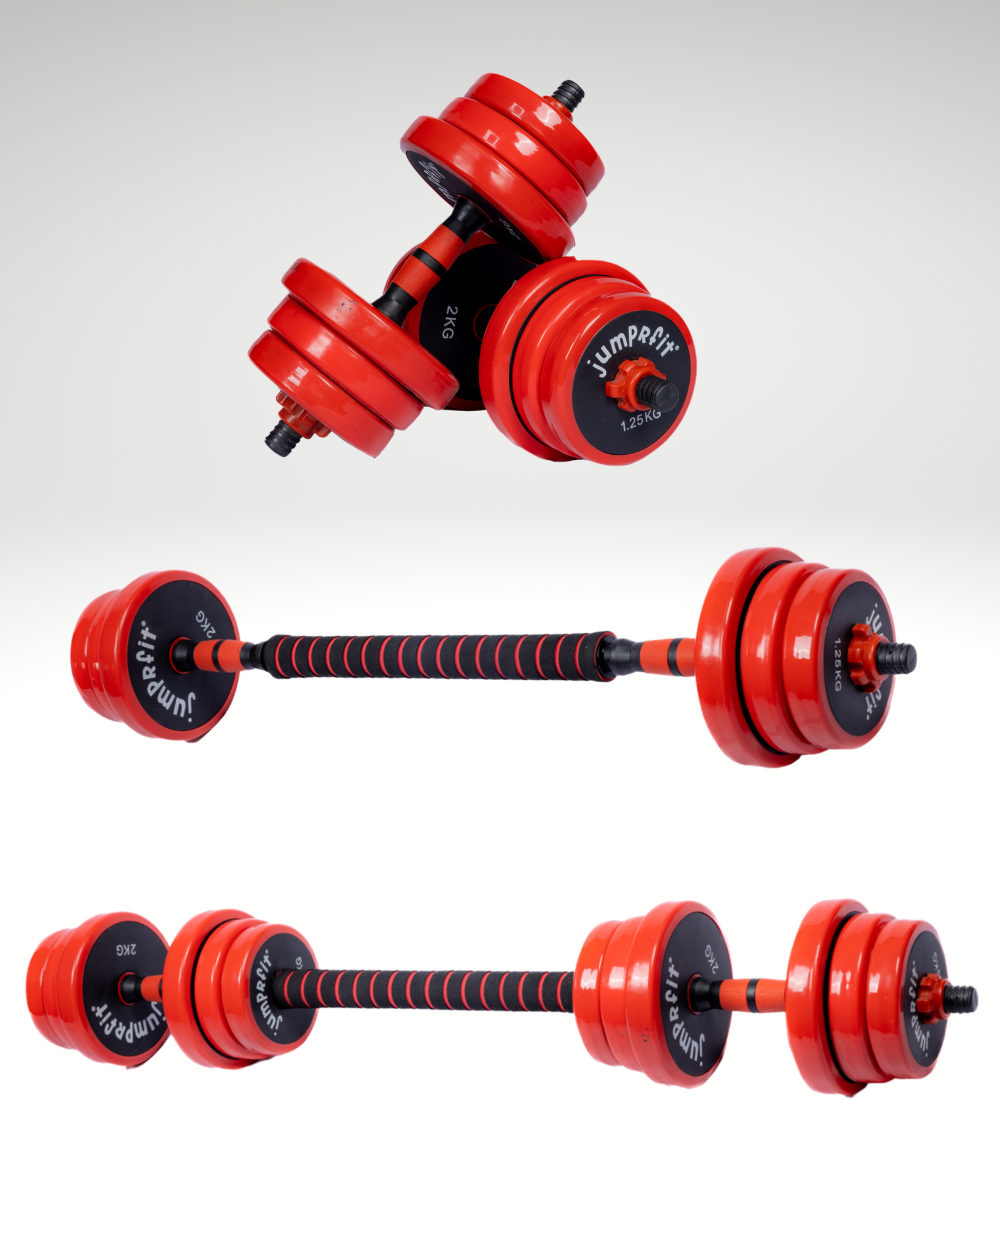 Jumprfit Adjustable Dumbbell and barbell Set - 20 kg (Red)